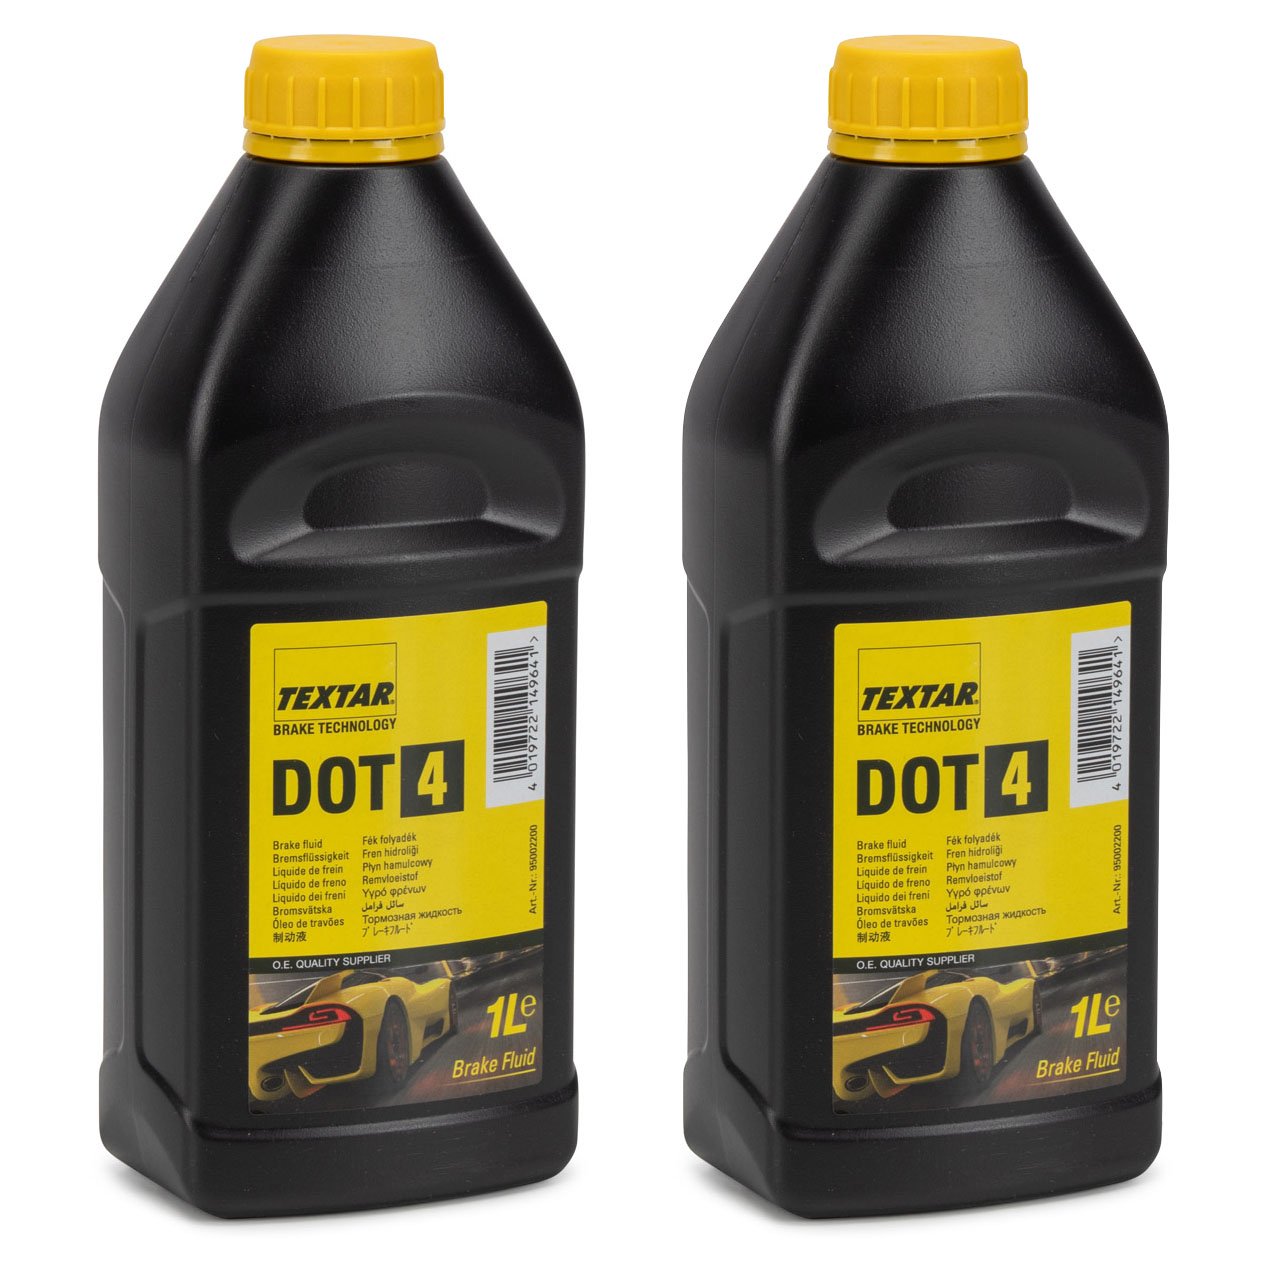 Opel Originalteilen GM, Kit Filter Öl Motor 1.6 CDTi Allgemeine 5W30, 5  Liter